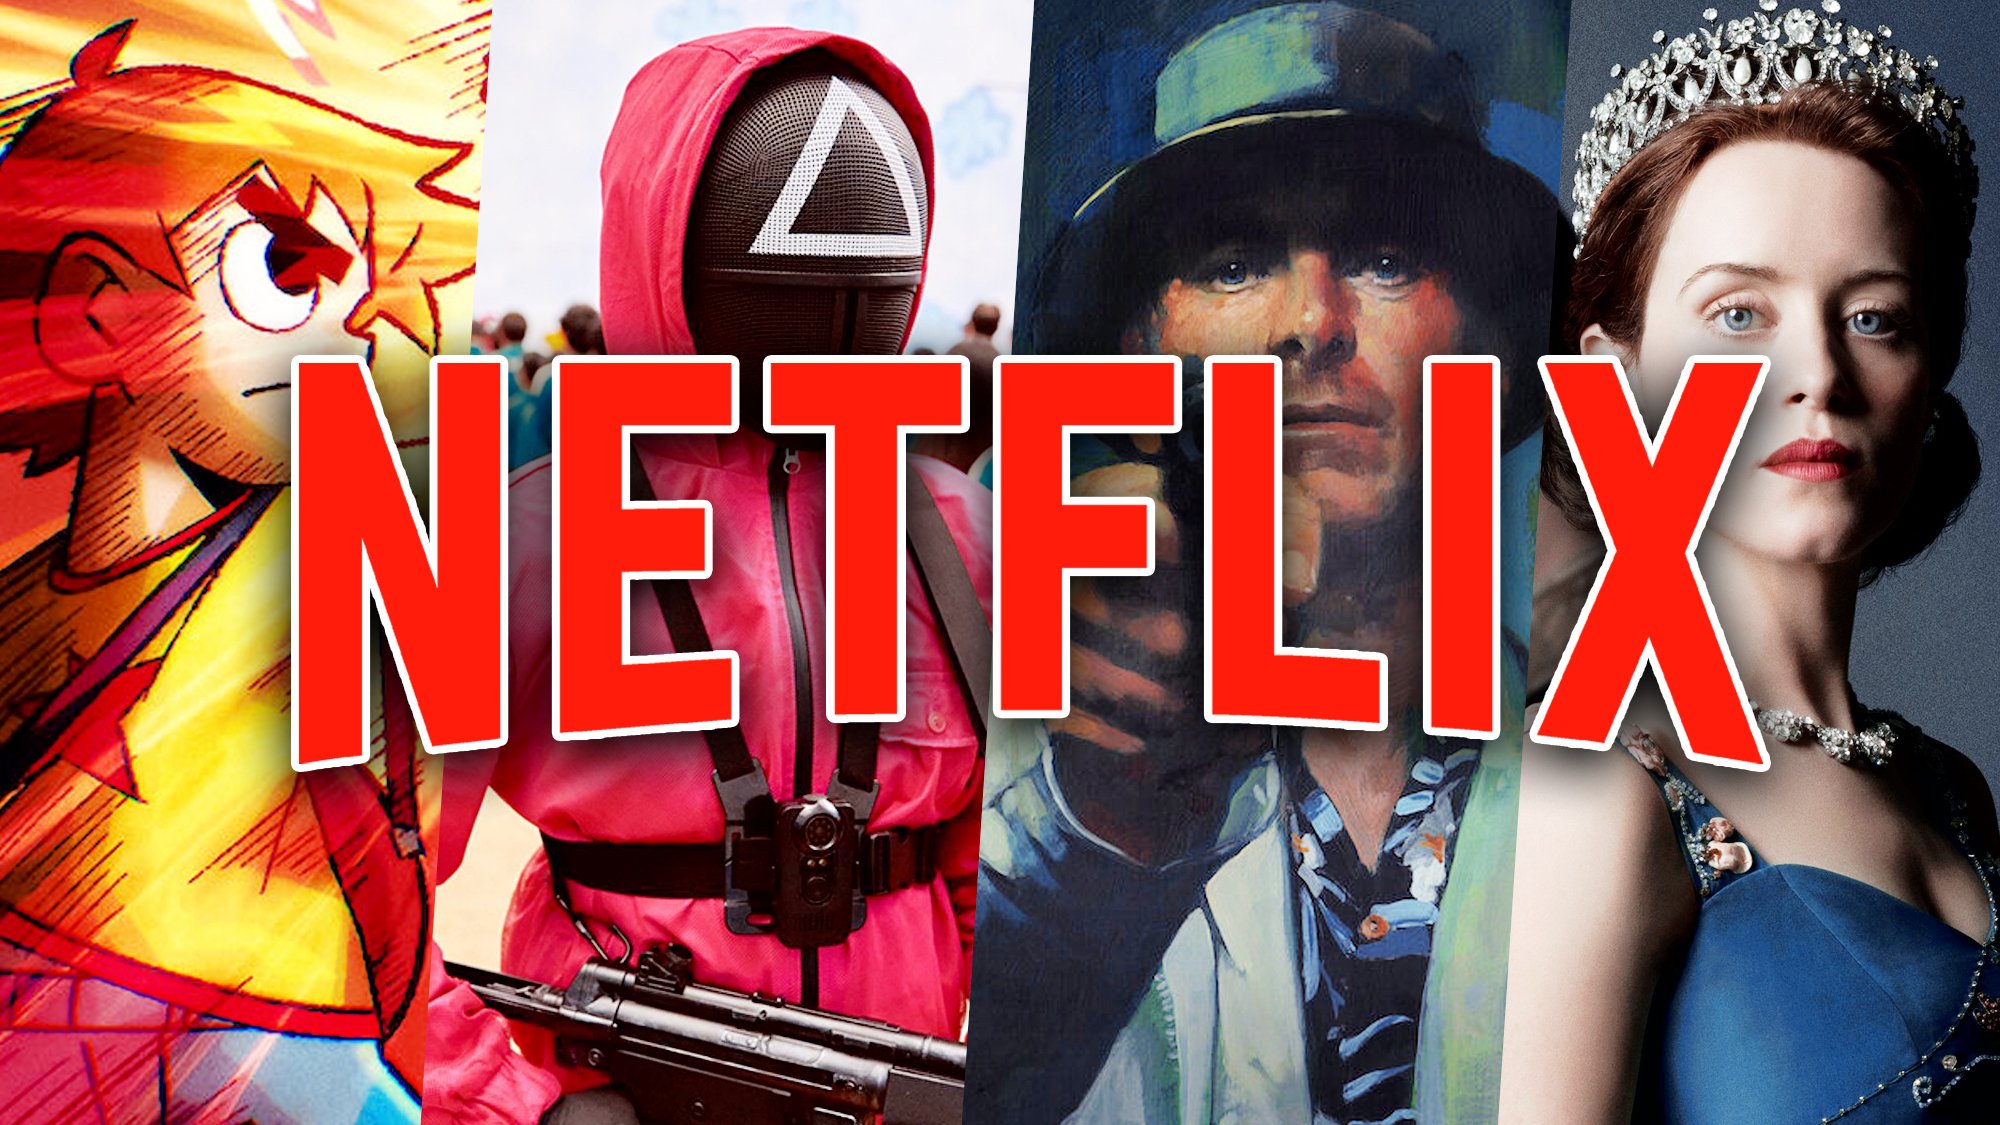 Netflix dévoile son prochain gros film issu d'un jeu culte, il se fait détruire !